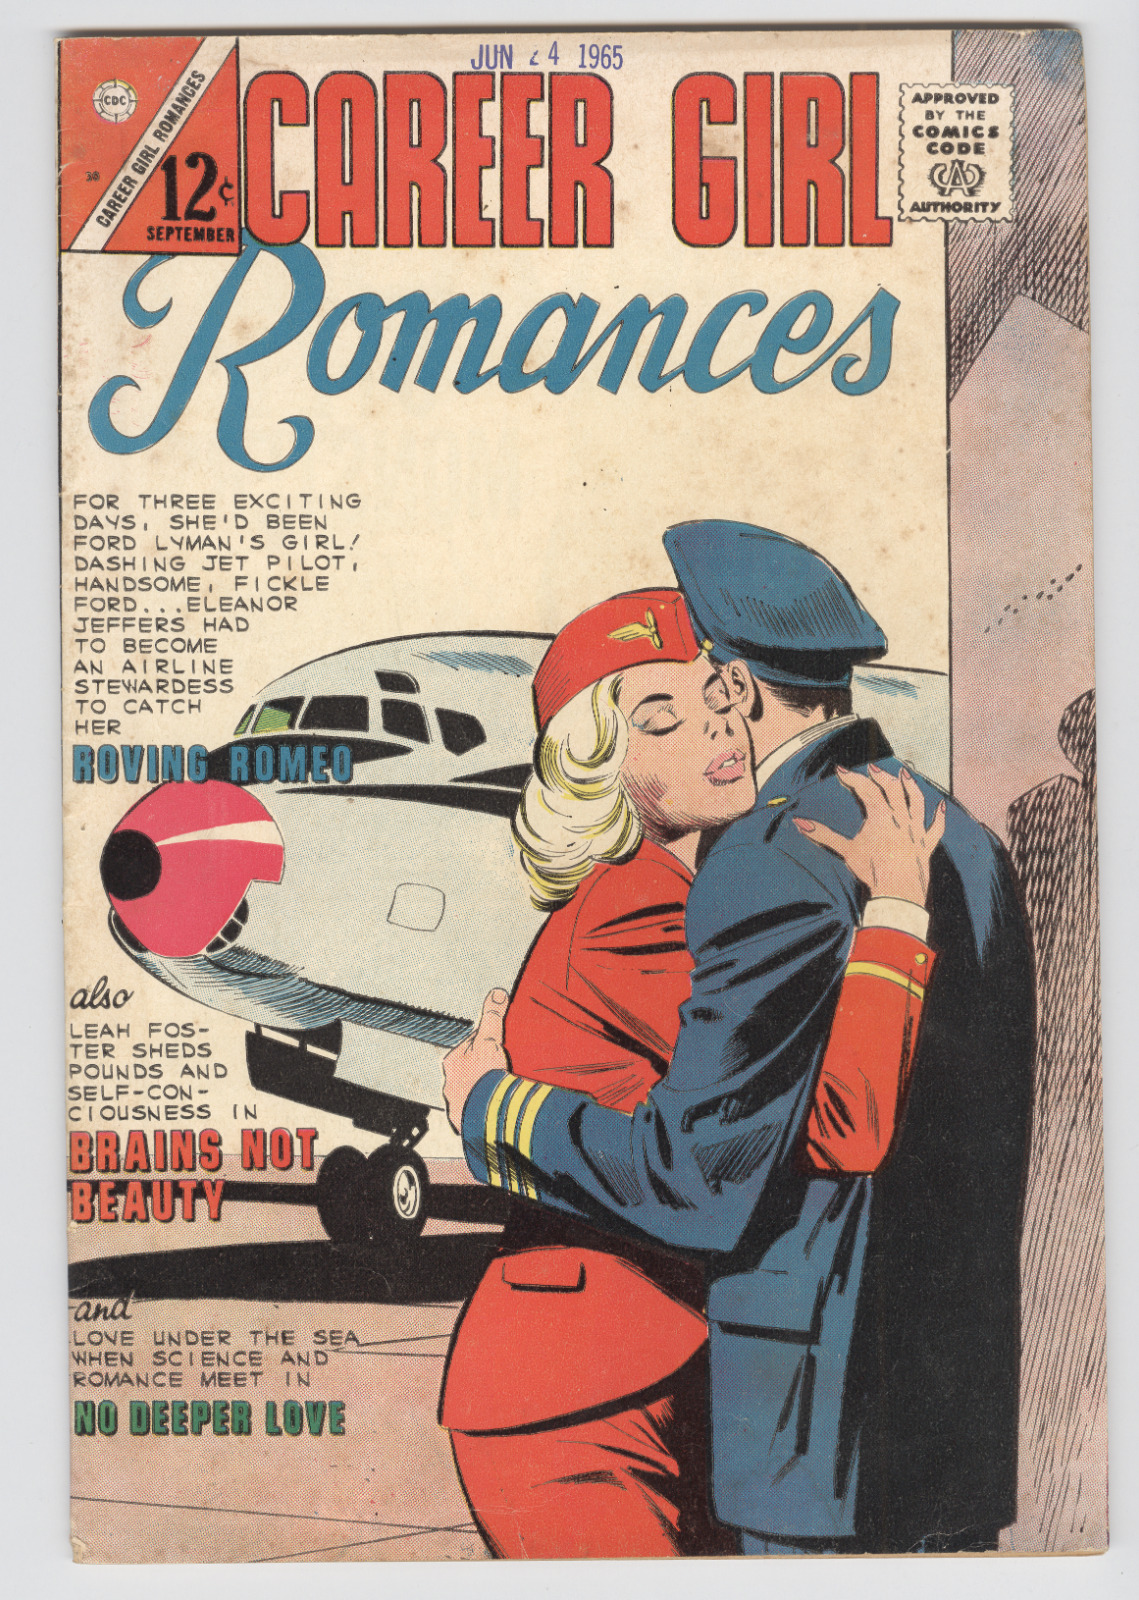 Career Girl Romances #30 September 1965 VG Classic Fat- Shaming Story